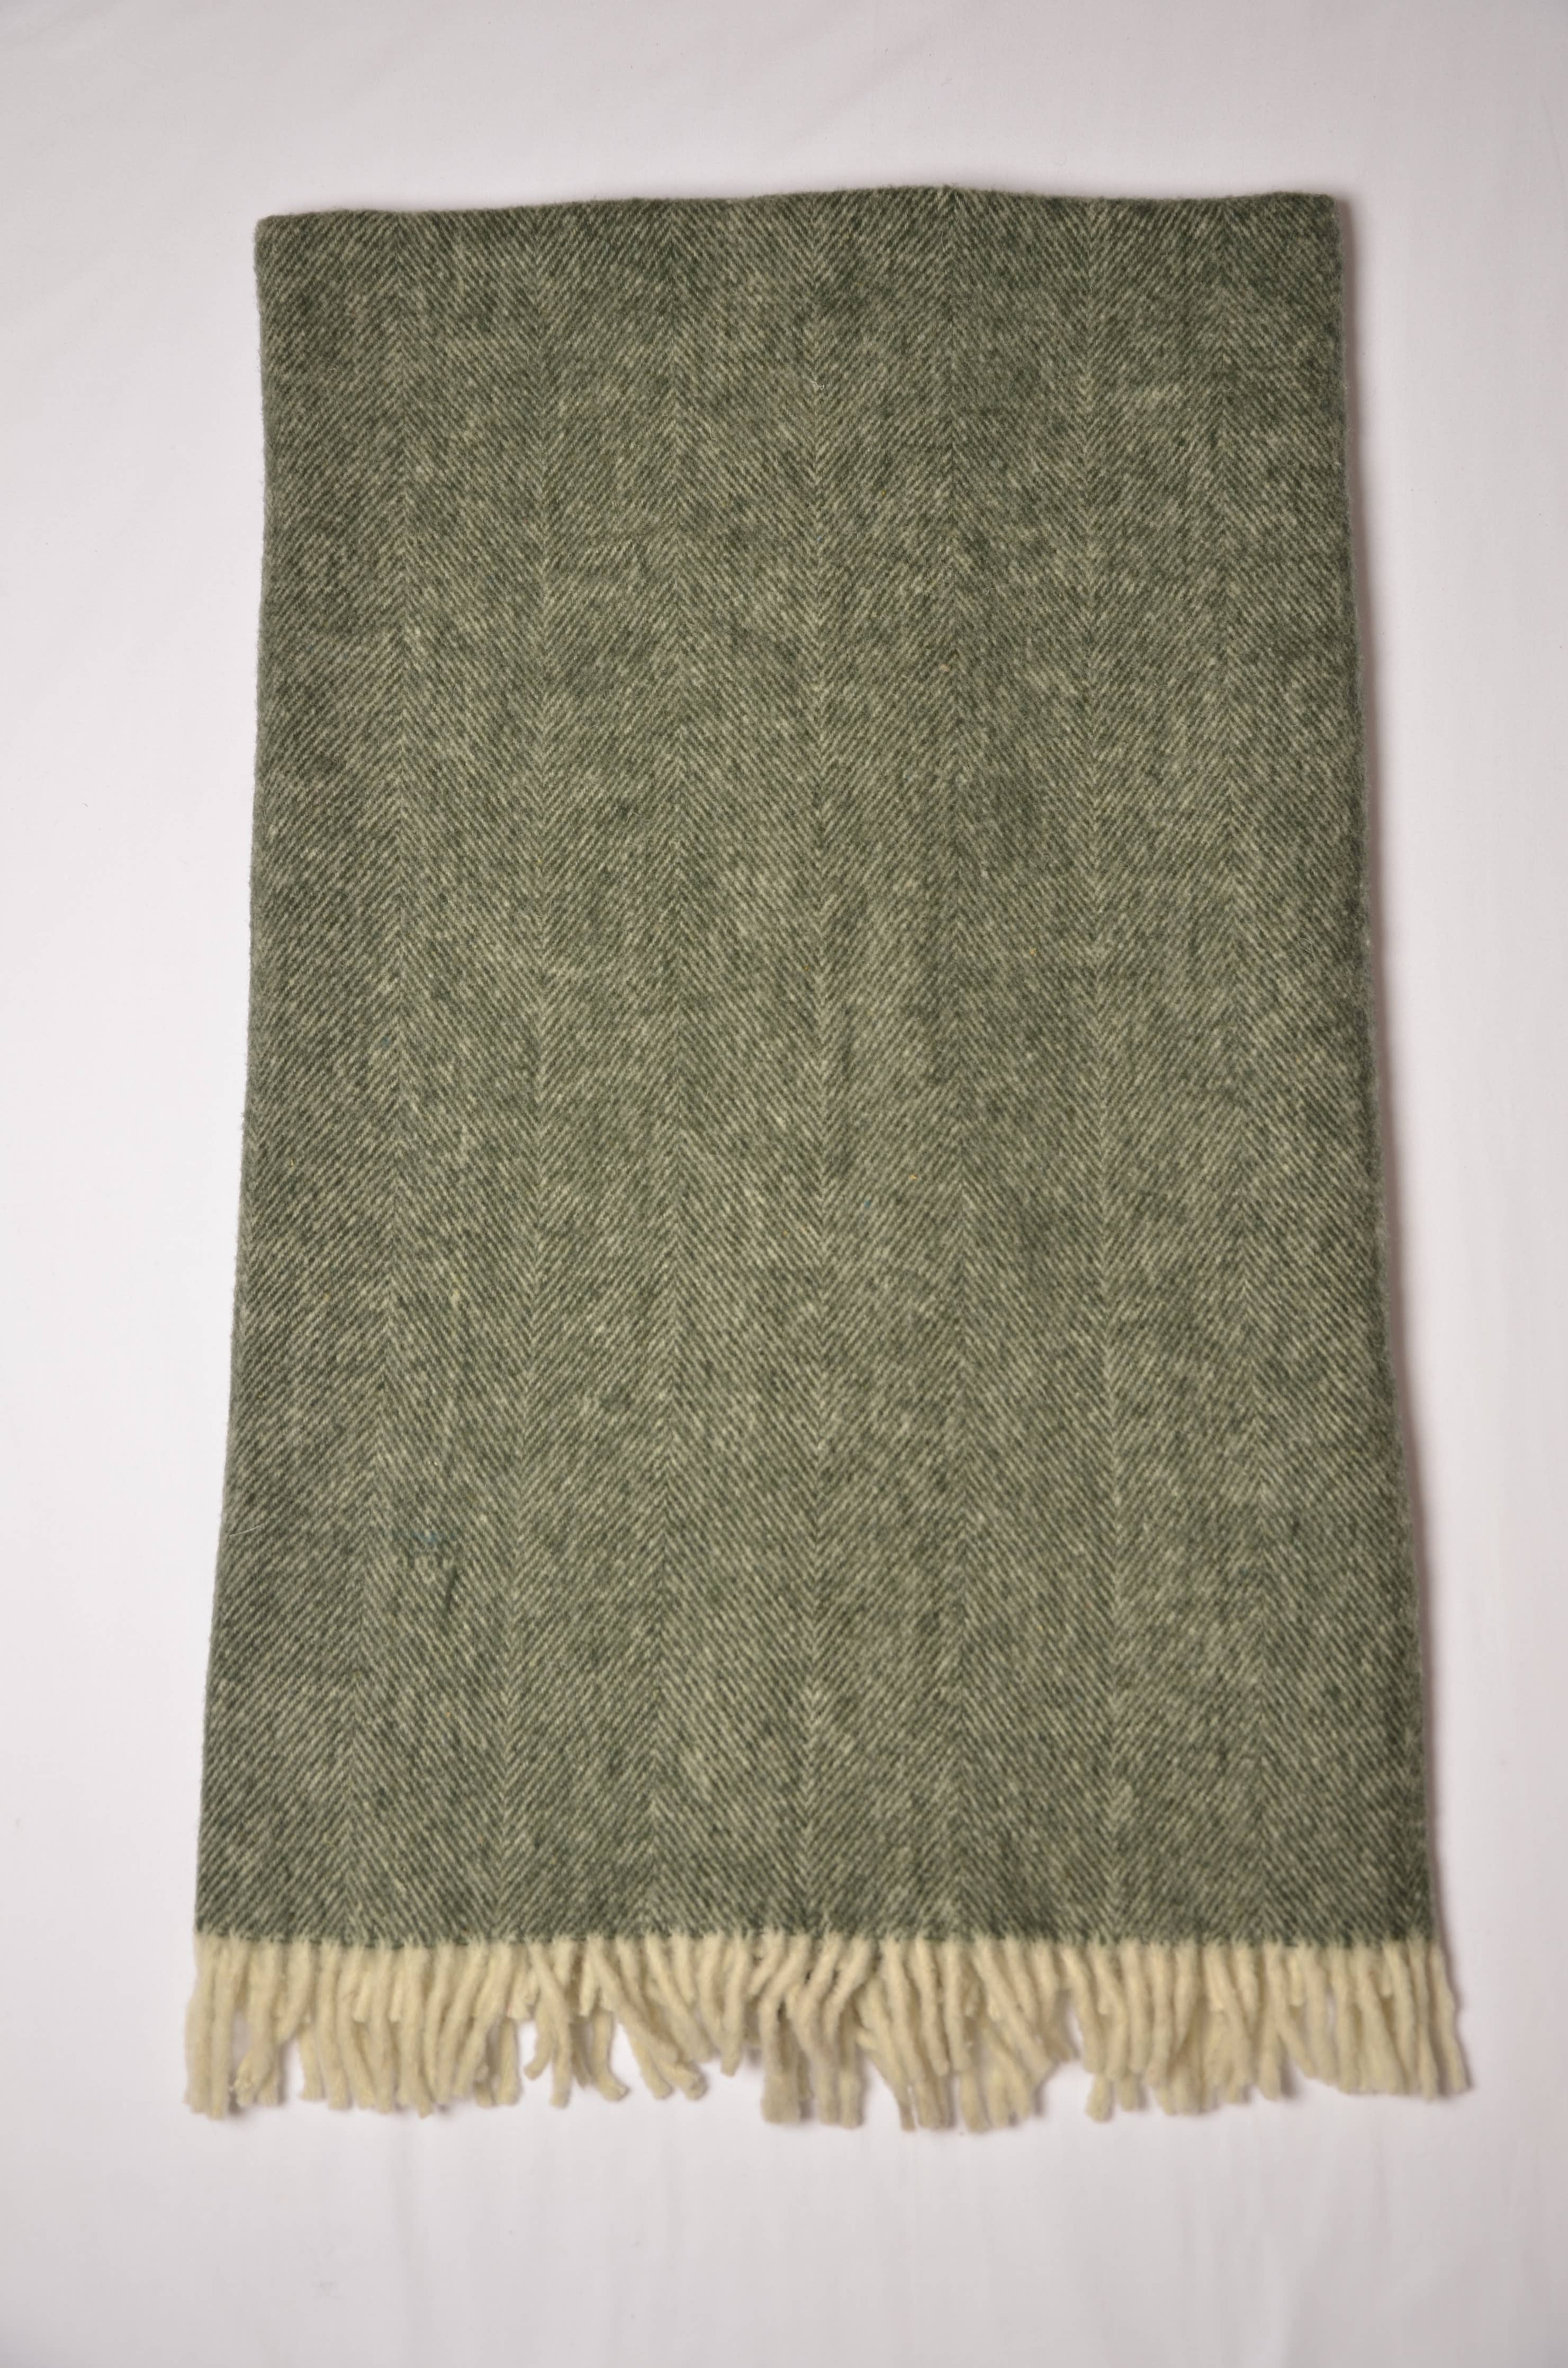 KAFTHAN - Brushed Herringbone Wool Throw Blankets 50"x70" (7802956775651)